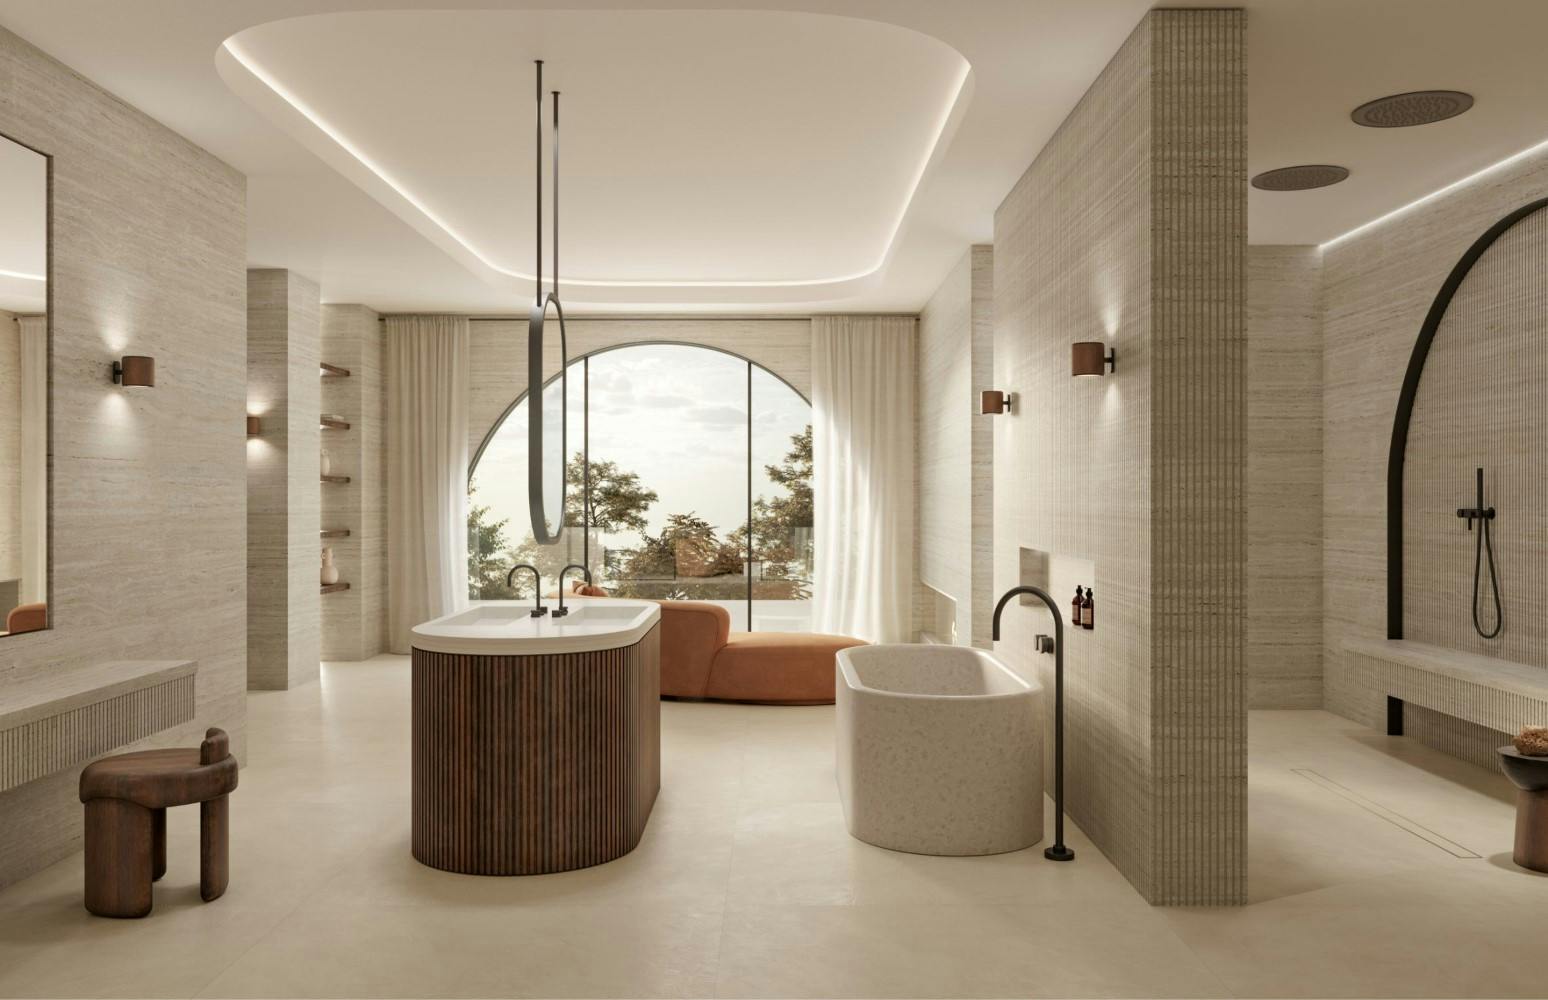 Bildnummer 41 des aktuellen Abschnitts von The Palazzo: the bathroom designed by Remy Meijers in which the shower takes centre stage von Cosentino Deutschland